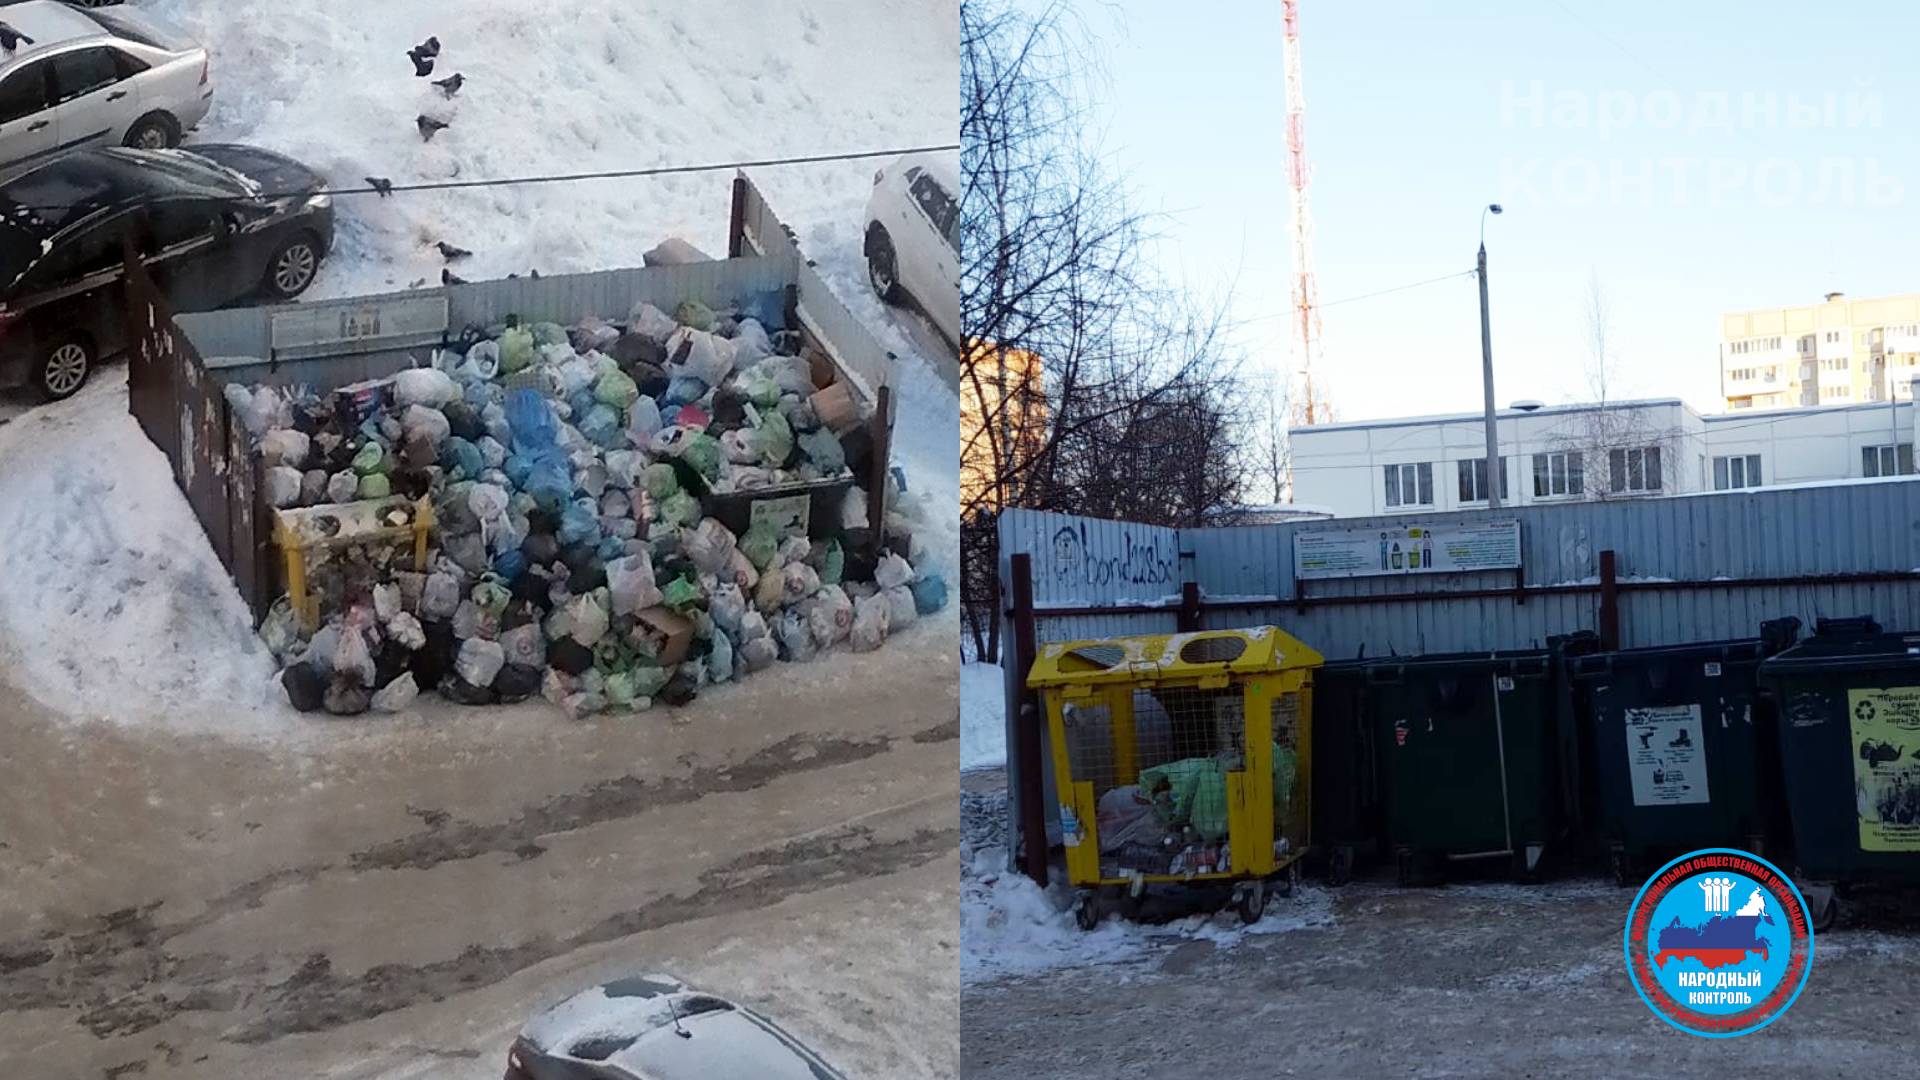 Ответ по свалке мусора с прошлого года в Казани на ул. Чишмяле